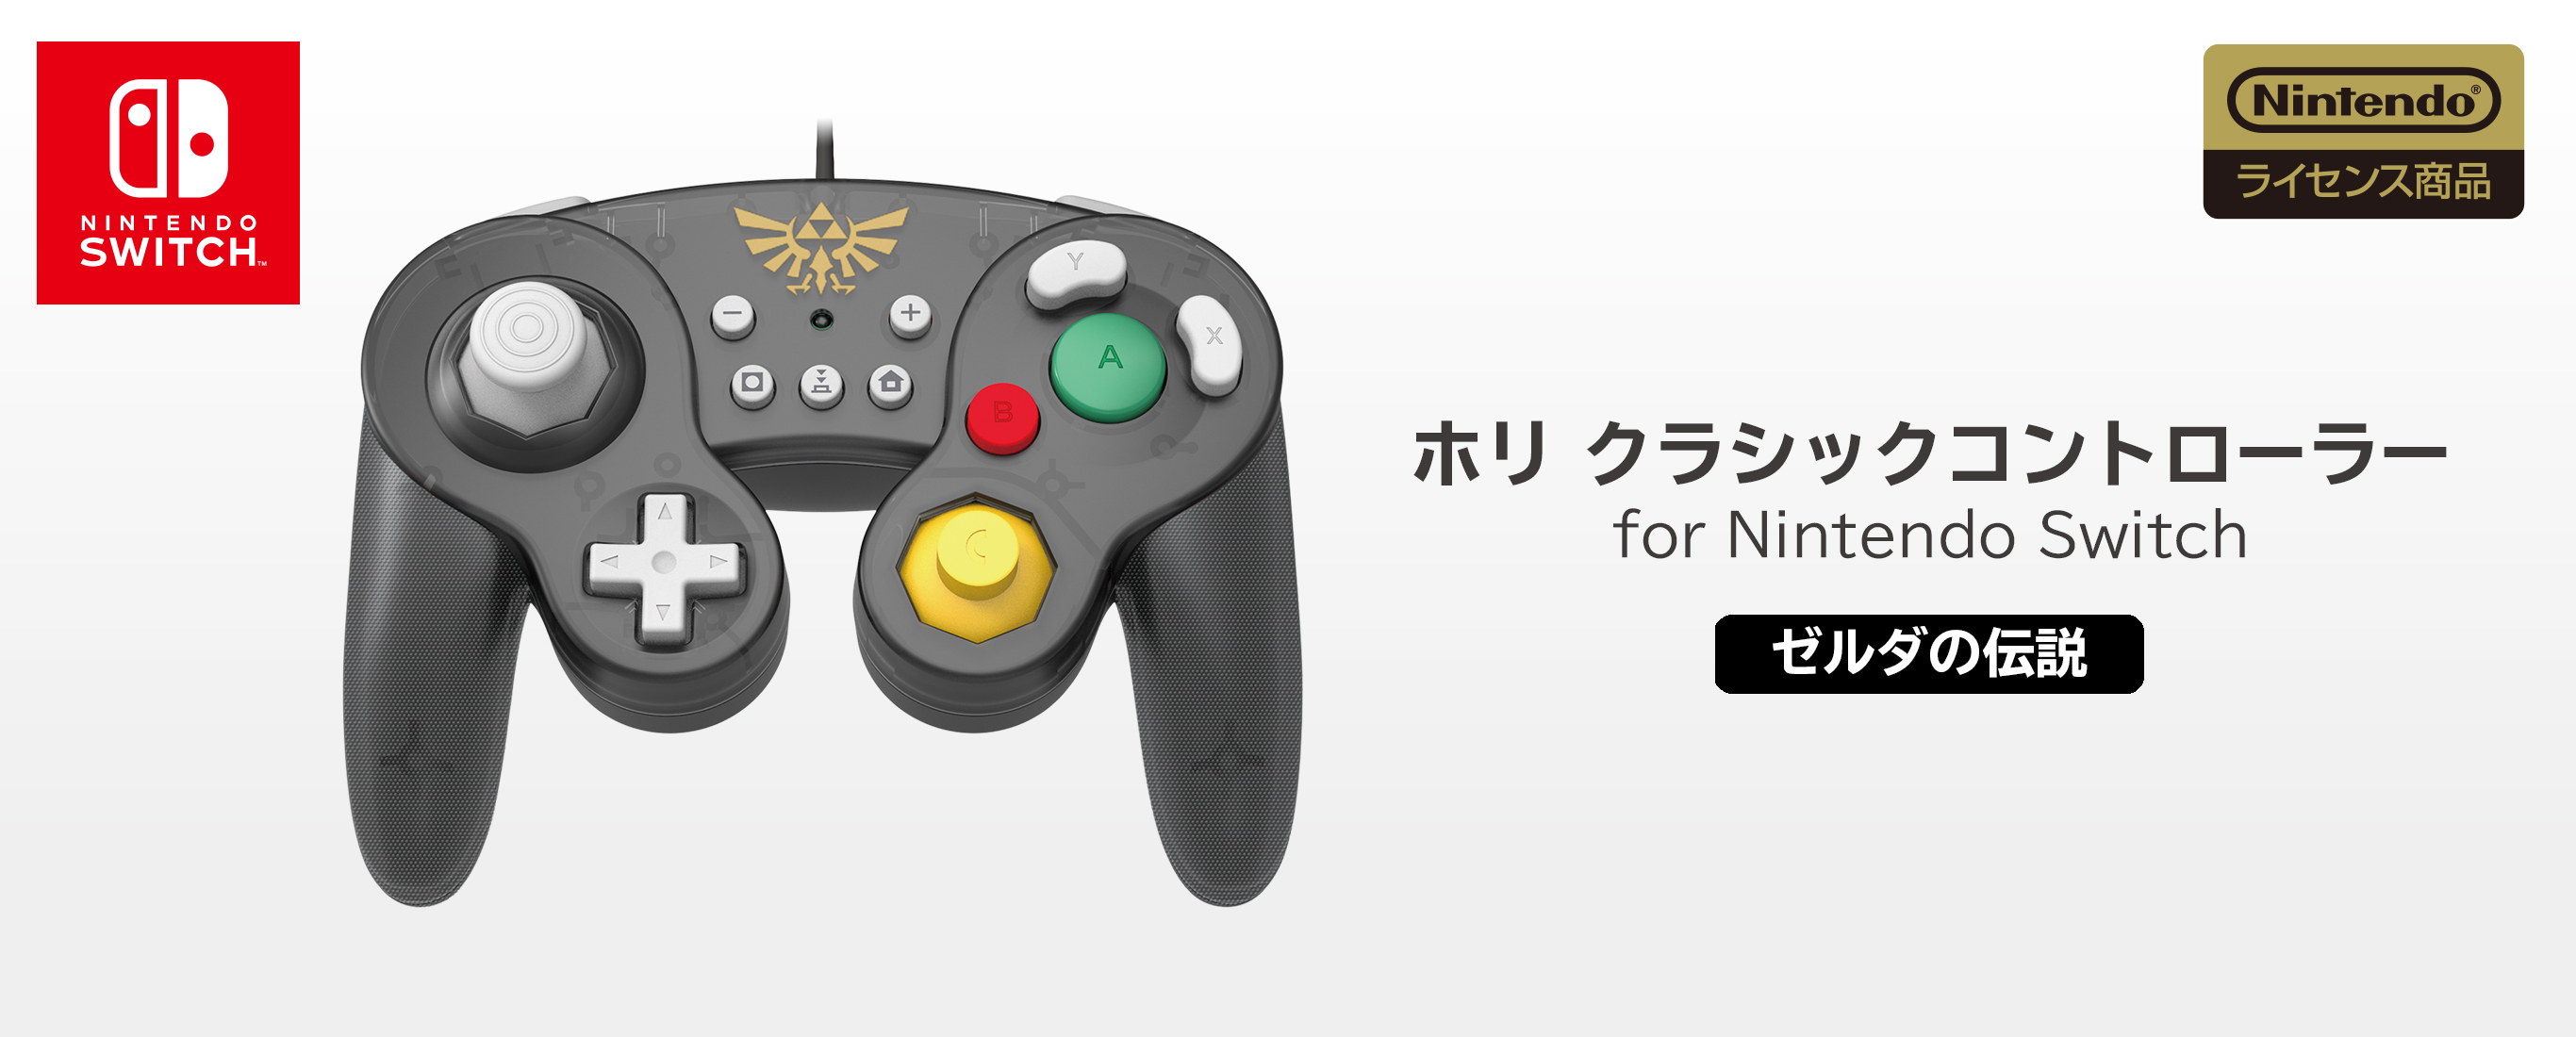 株式会社 Hori ホリ クラシックコントローラー For Nintendo Switch ゼルダの伝説